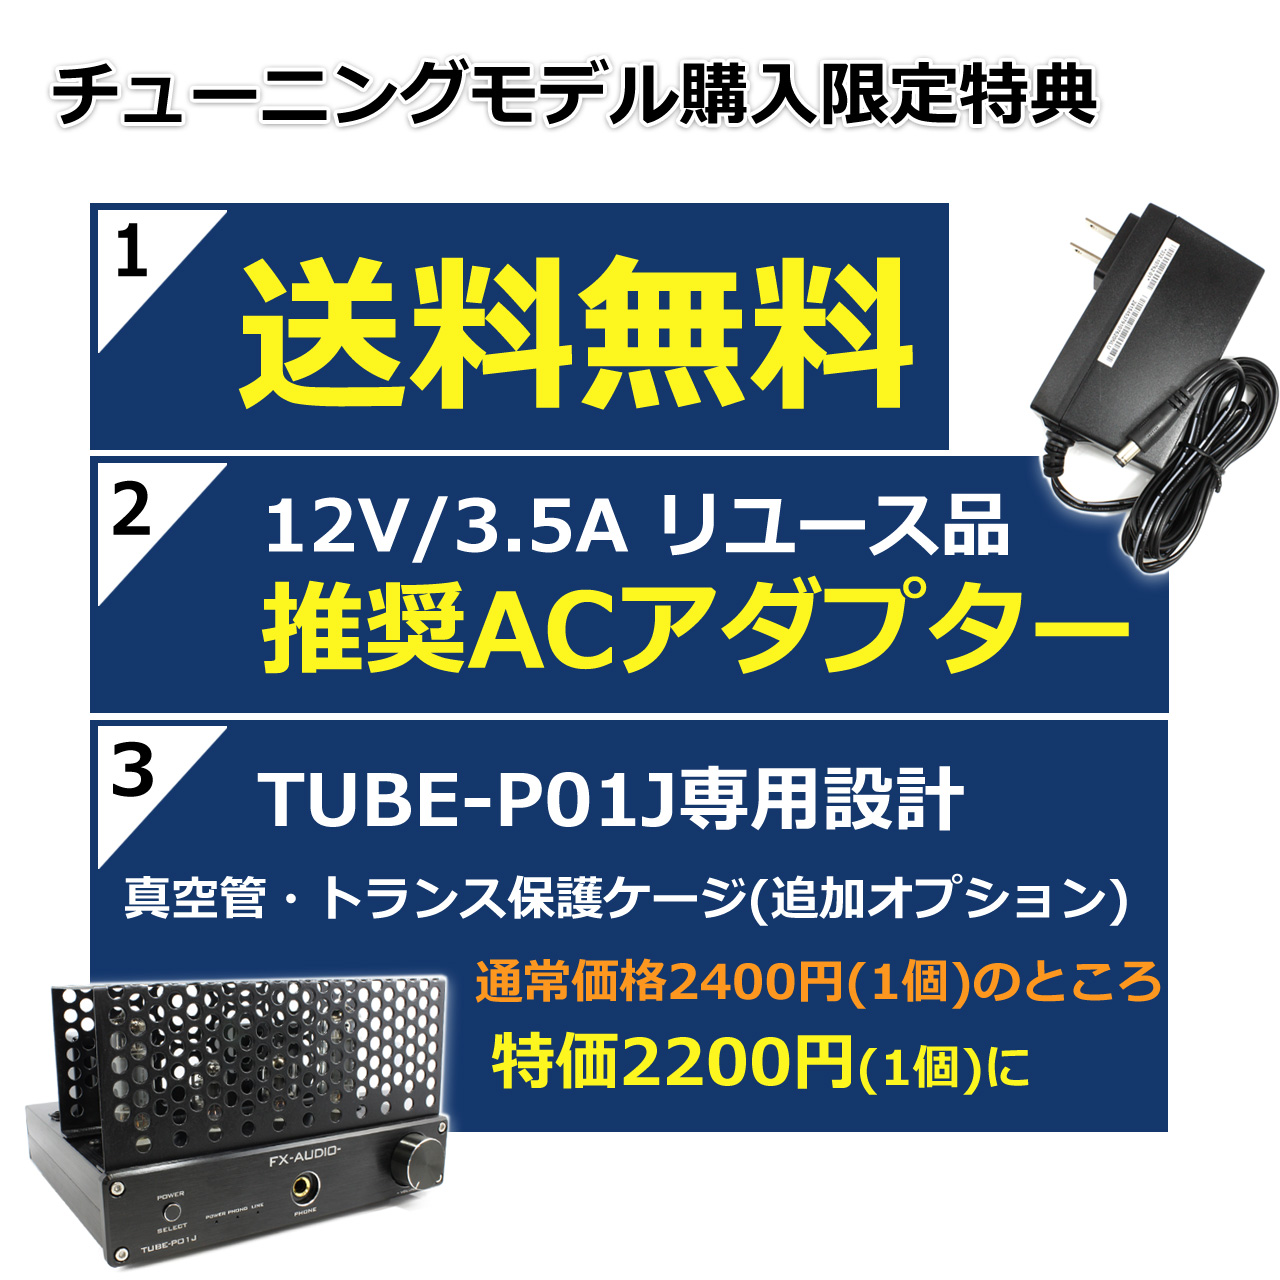 安い 即納 FX-AUDIO- TUBE-P01J ブラック シングルエンド純A級 真空管プリメインアンプ